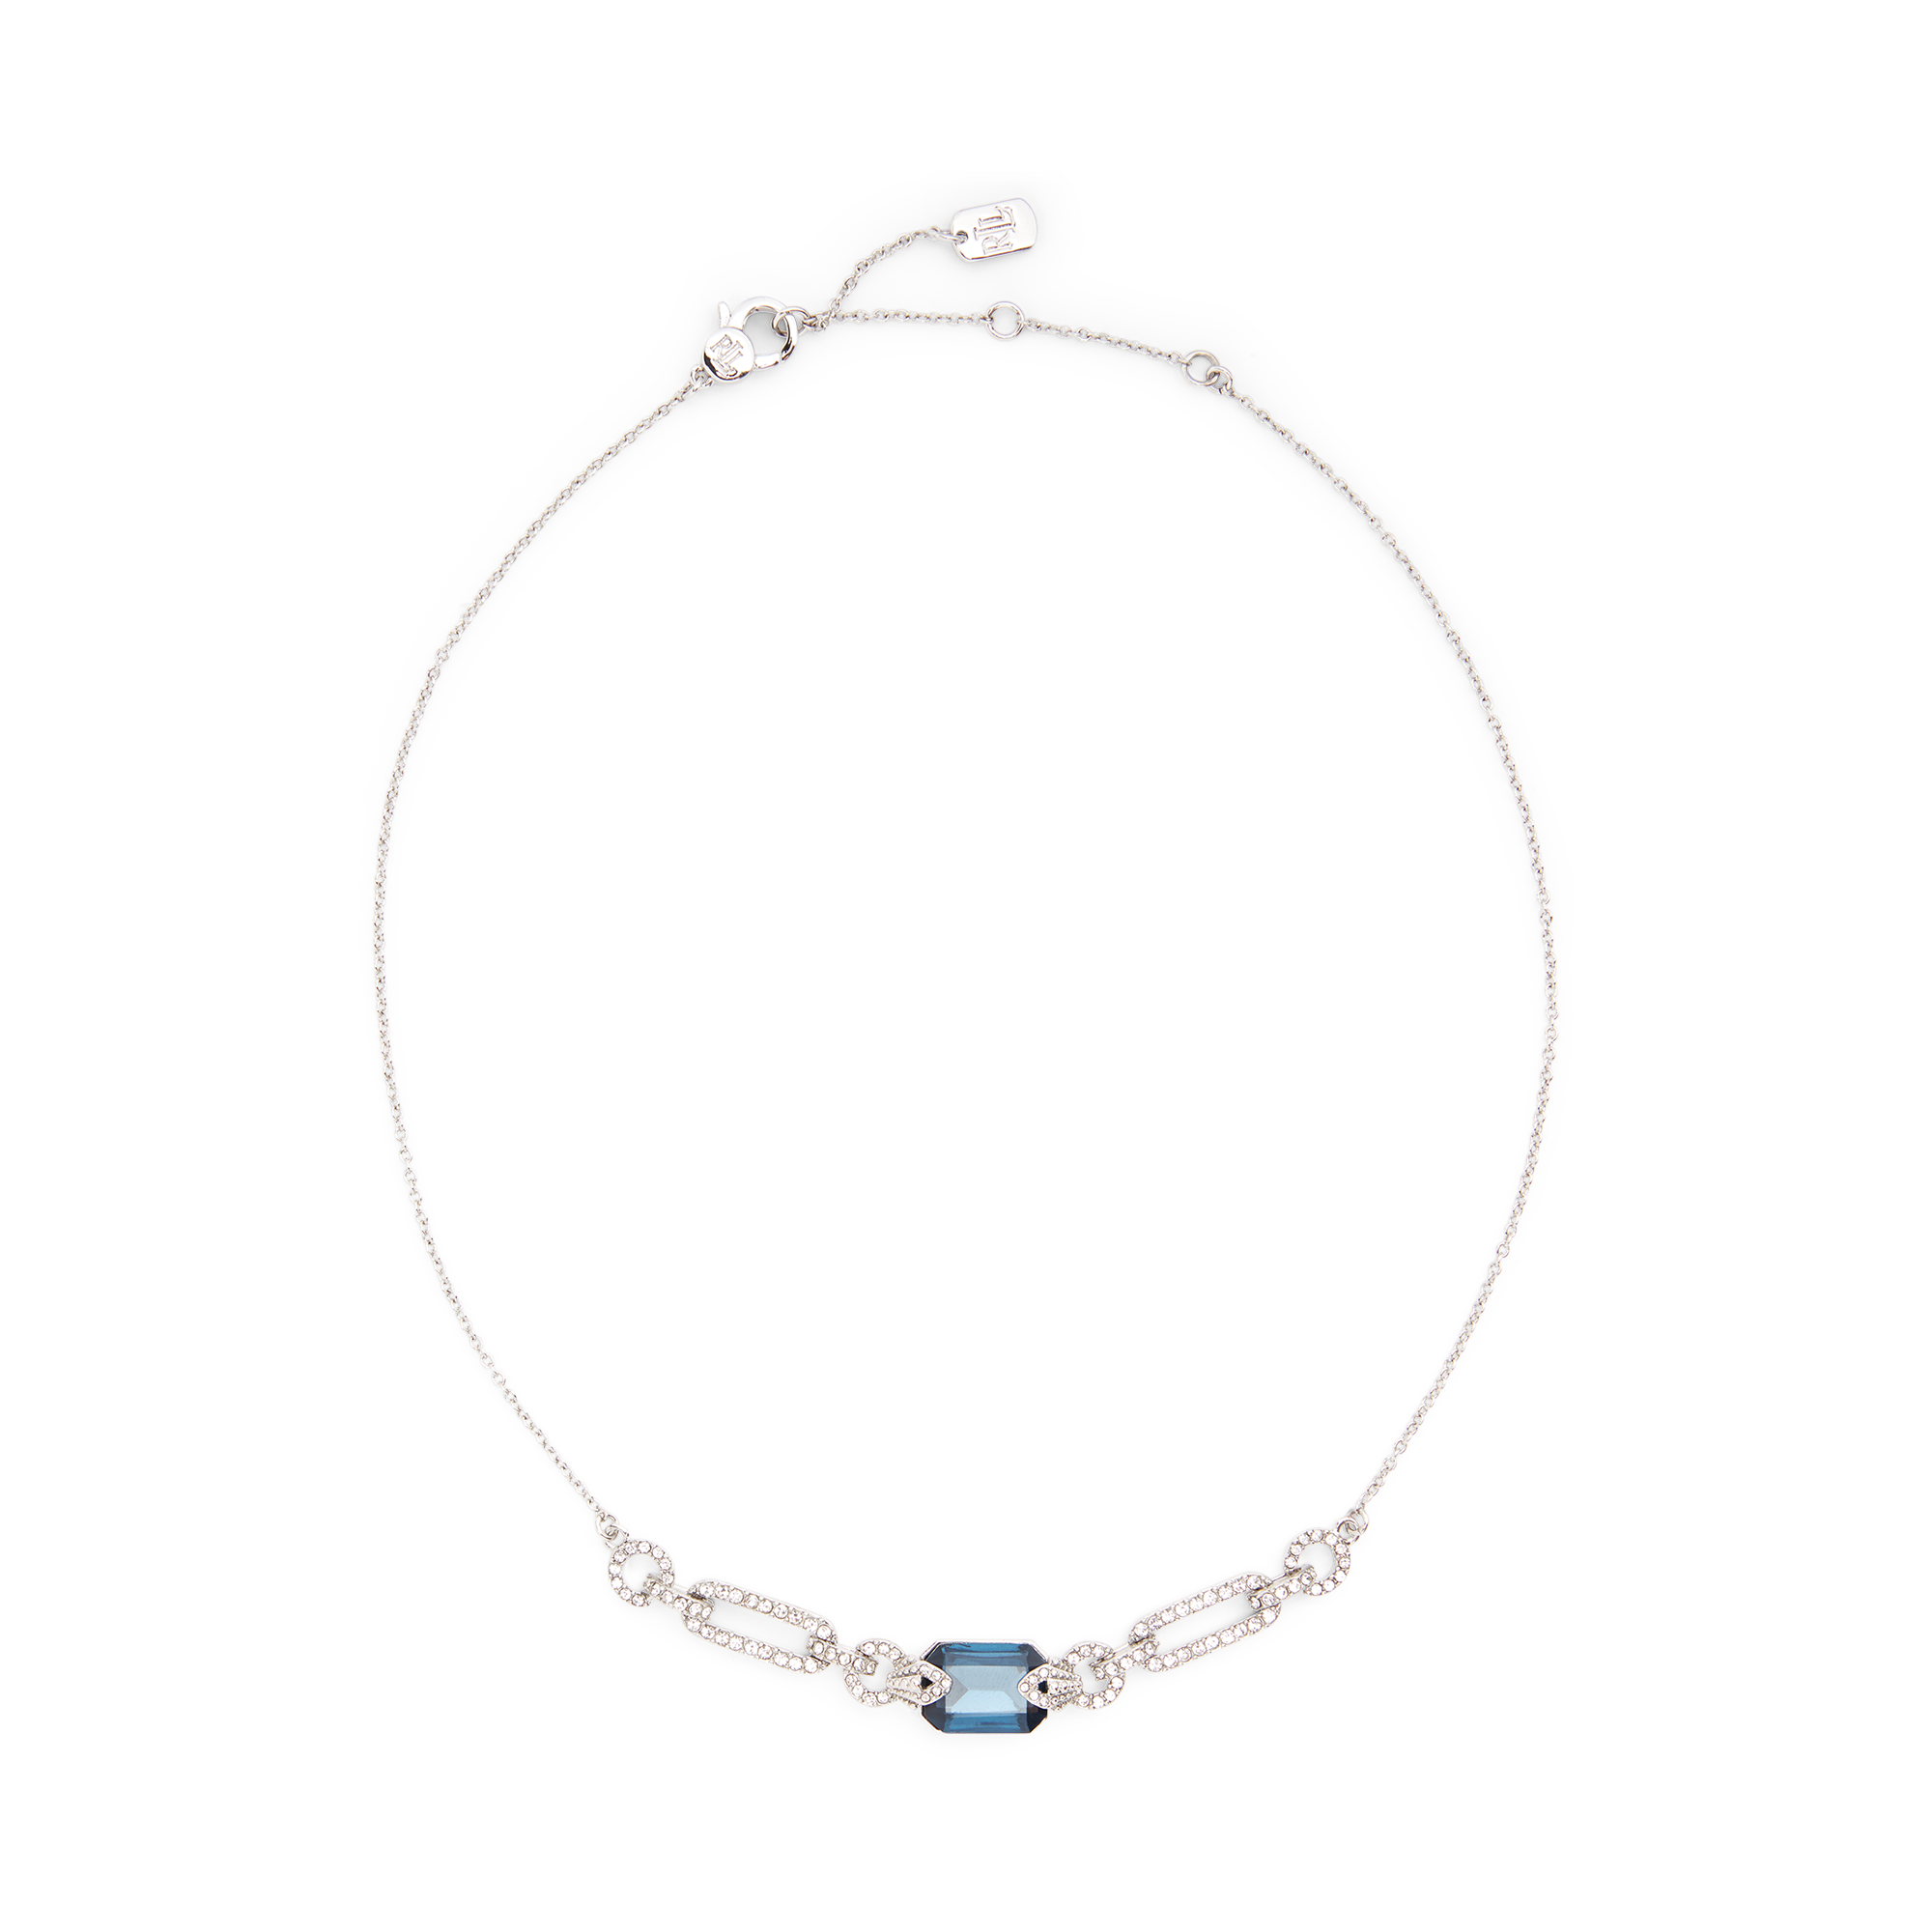 Ralph Lauren Blue Stone Pavé Necklace. 1